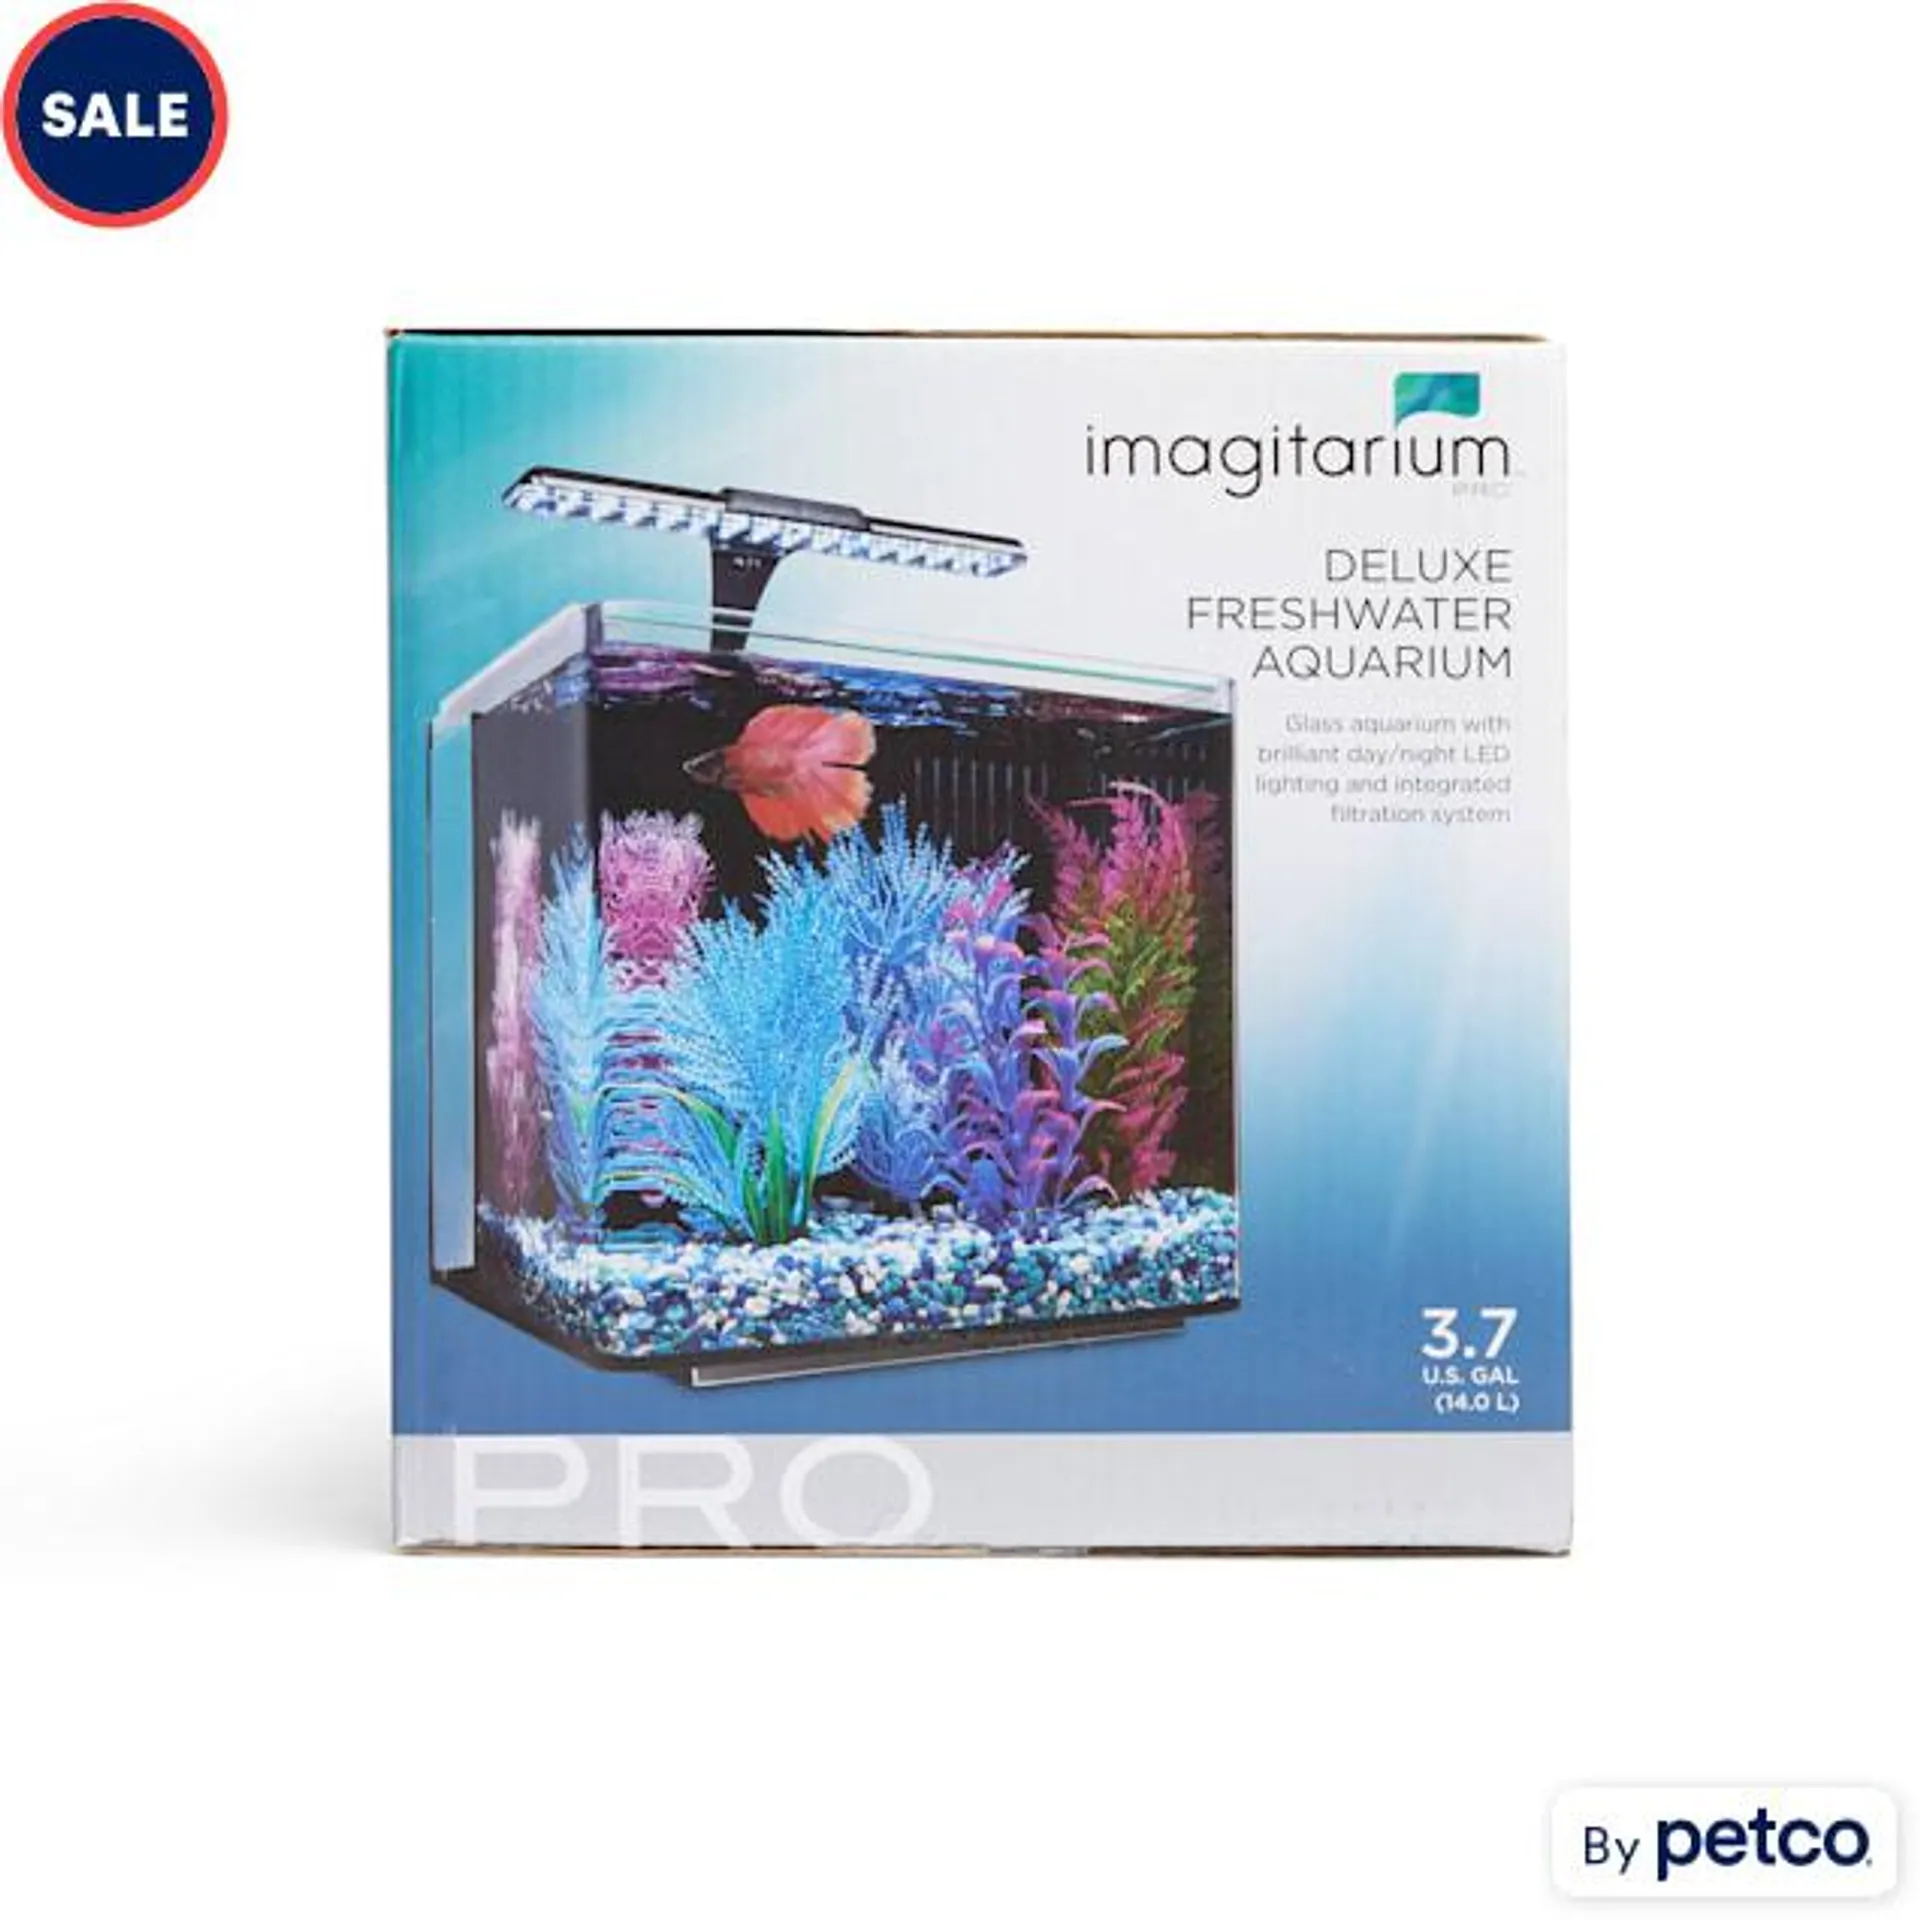 Imagitarium 3.7 Gallon PRO Deluxe Freshwater Aquarium